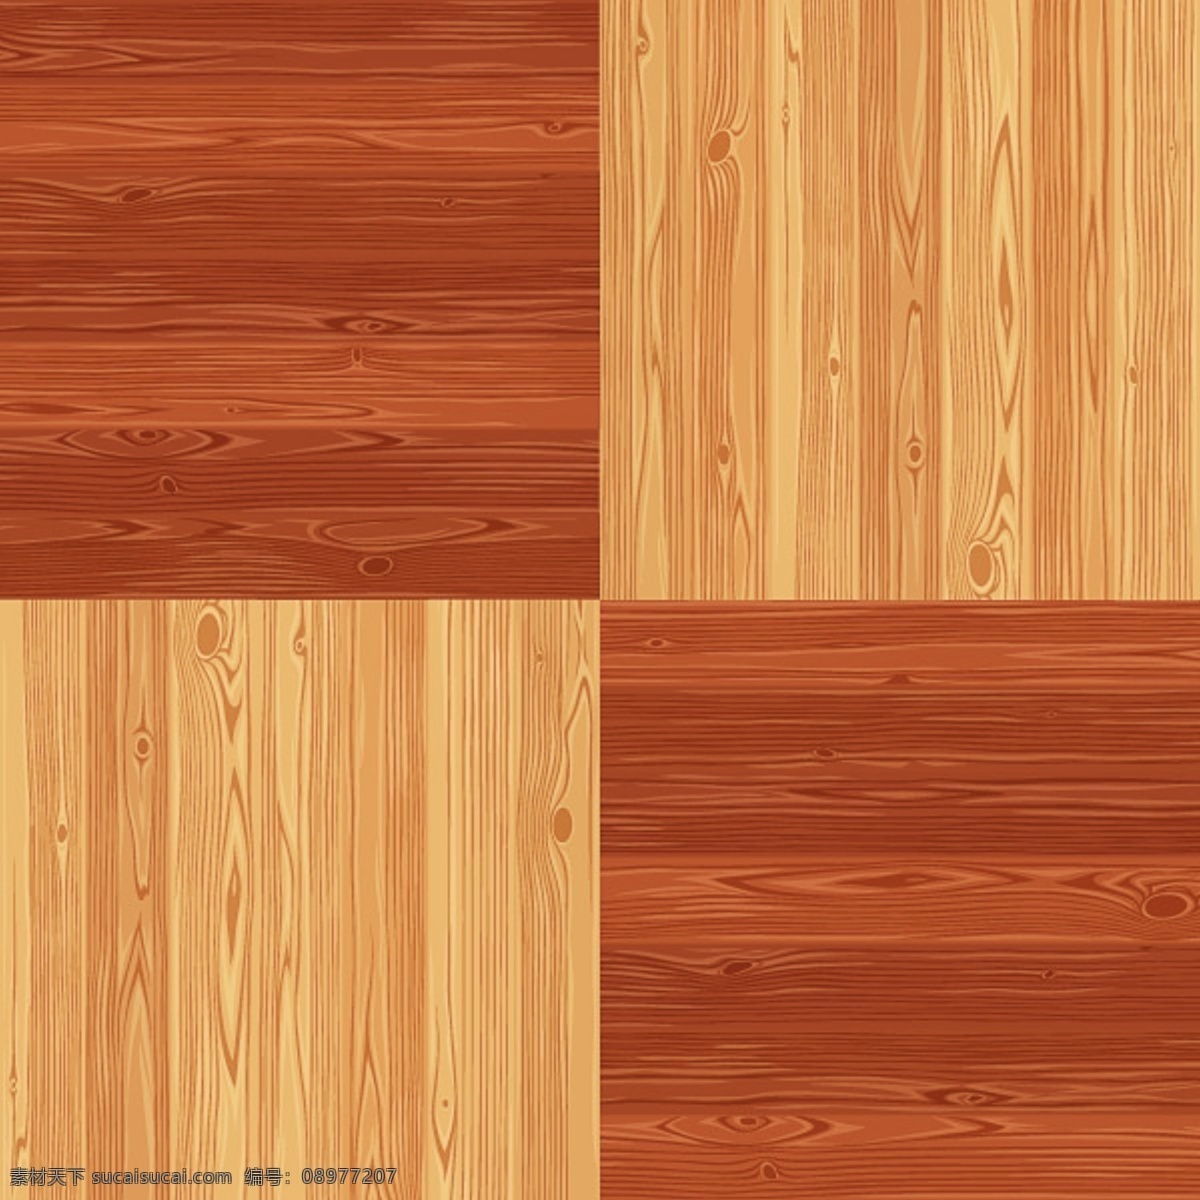 木板 背景 木头 纹理 材质 木板背景 木头纹理 木板材质